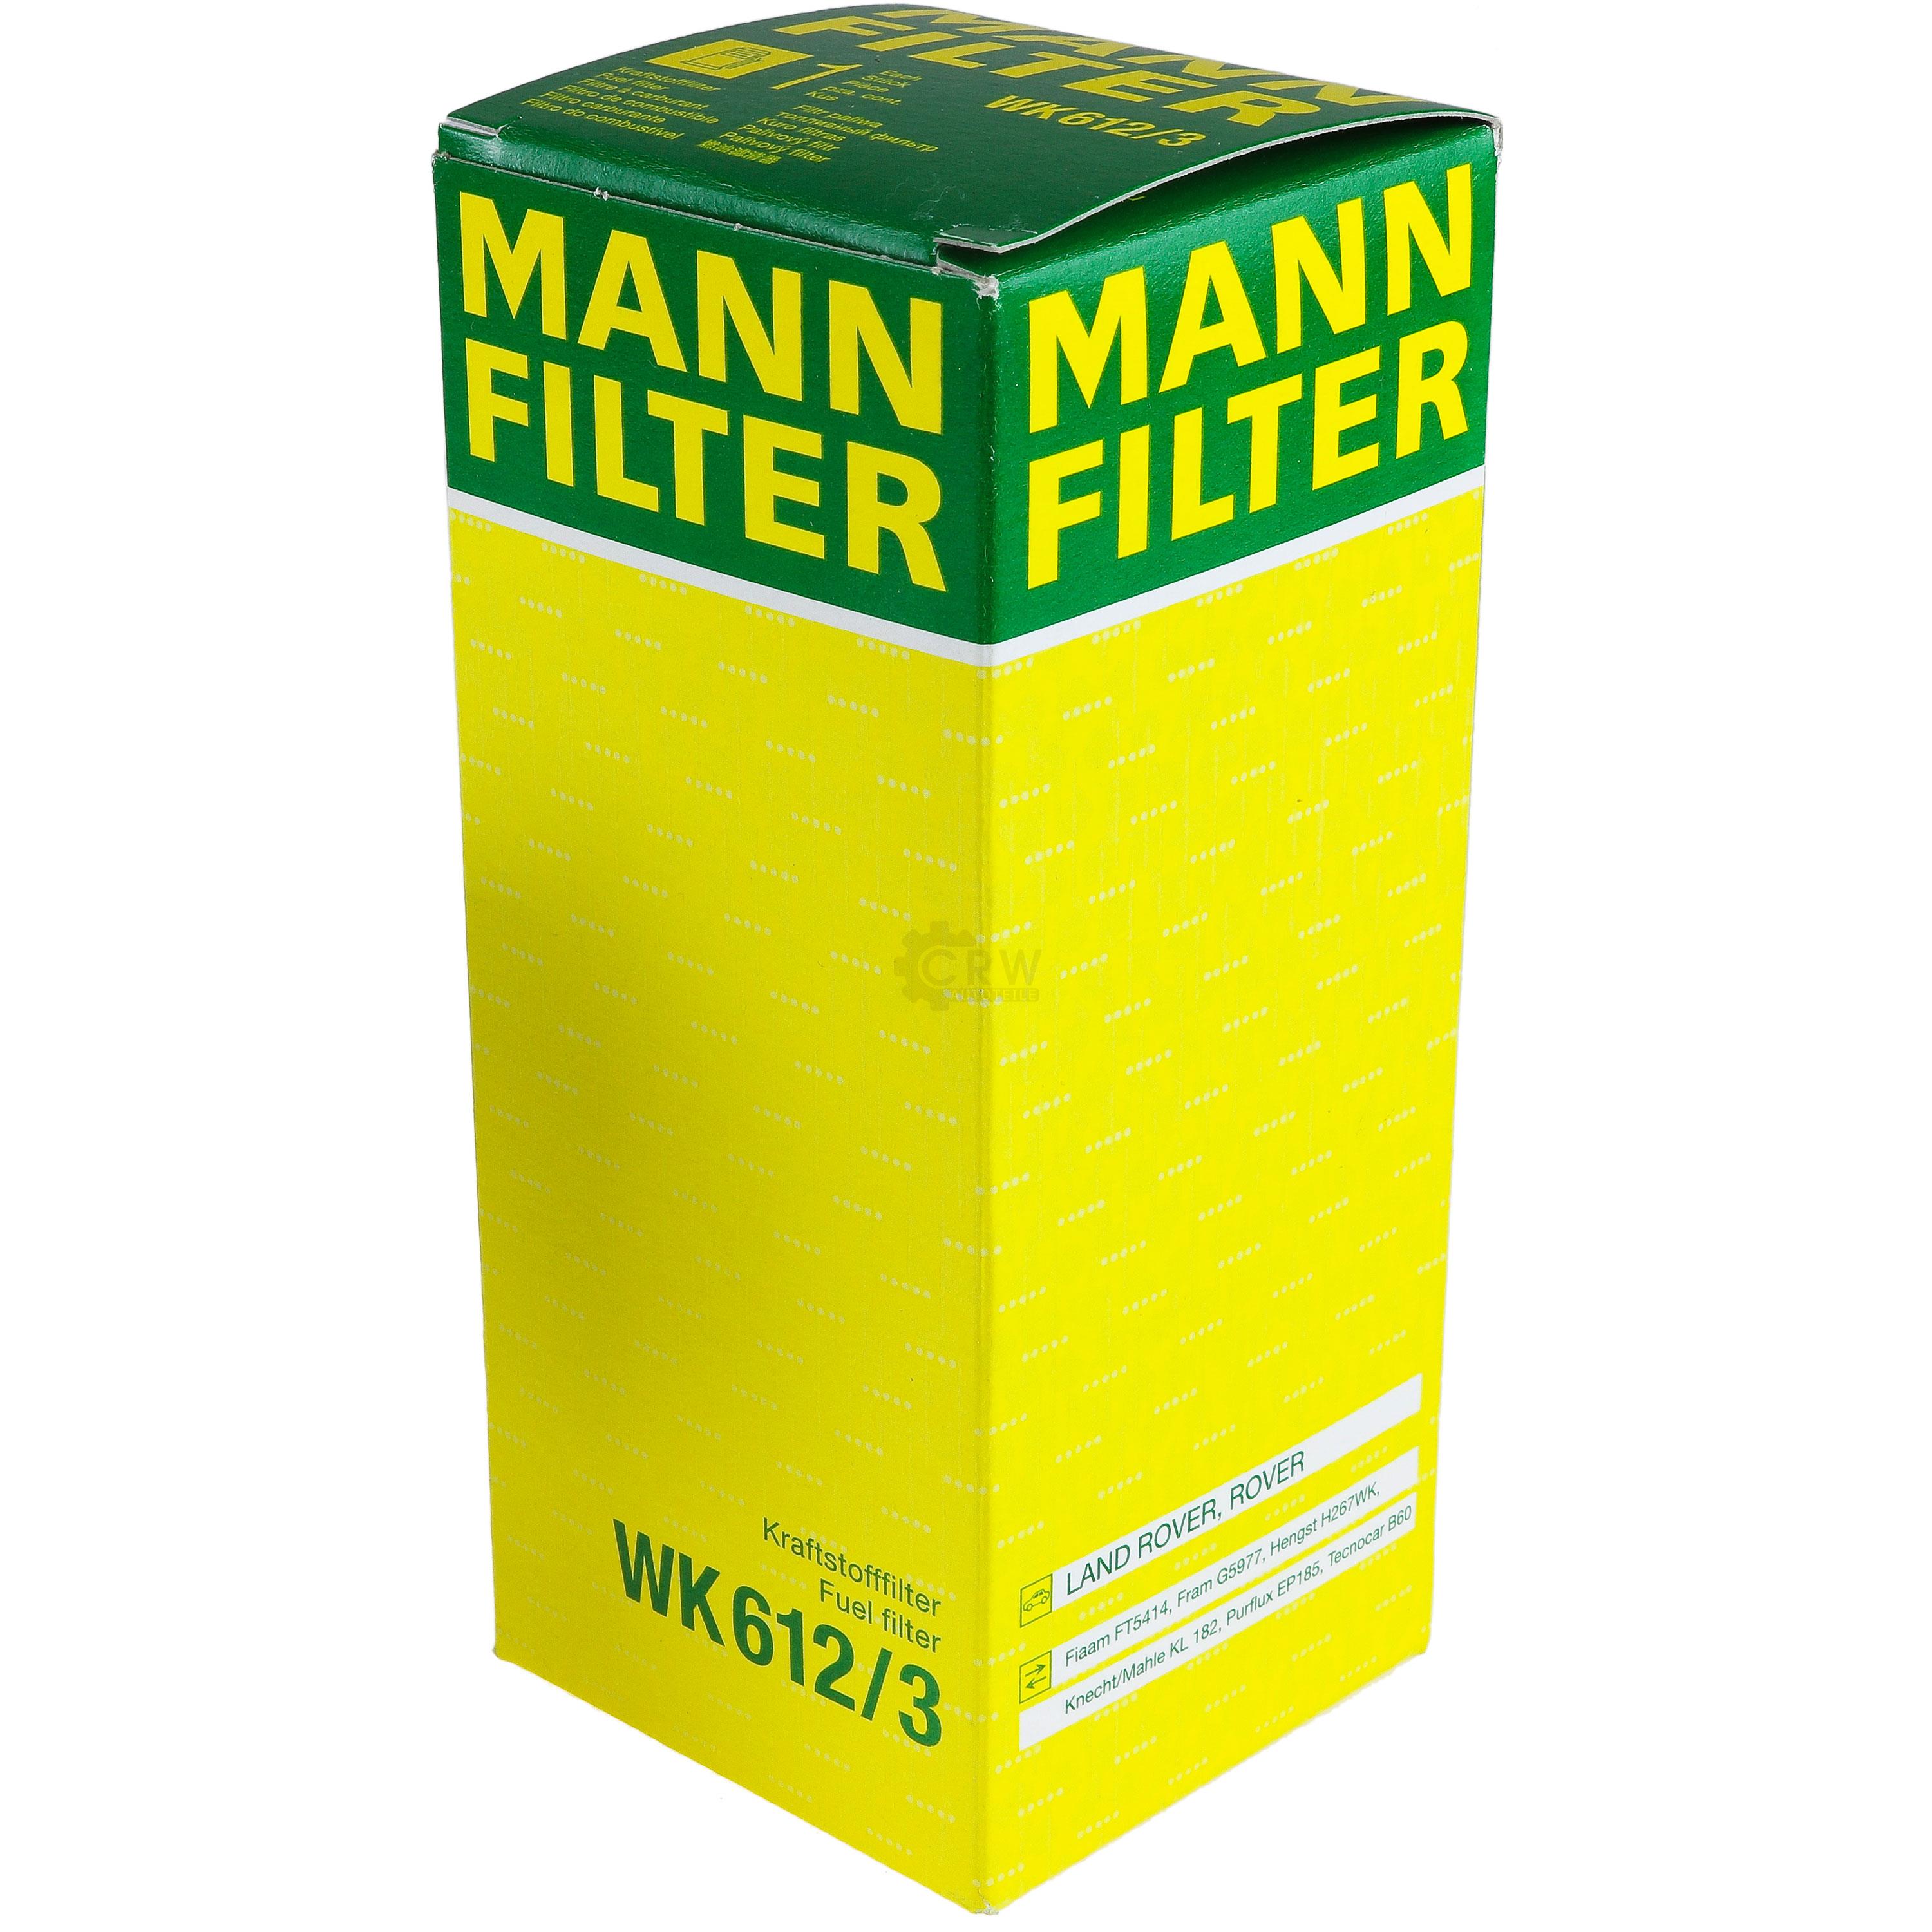 MANN-FILTER Kraftstofffilter WK 612/3 Fuel Filter